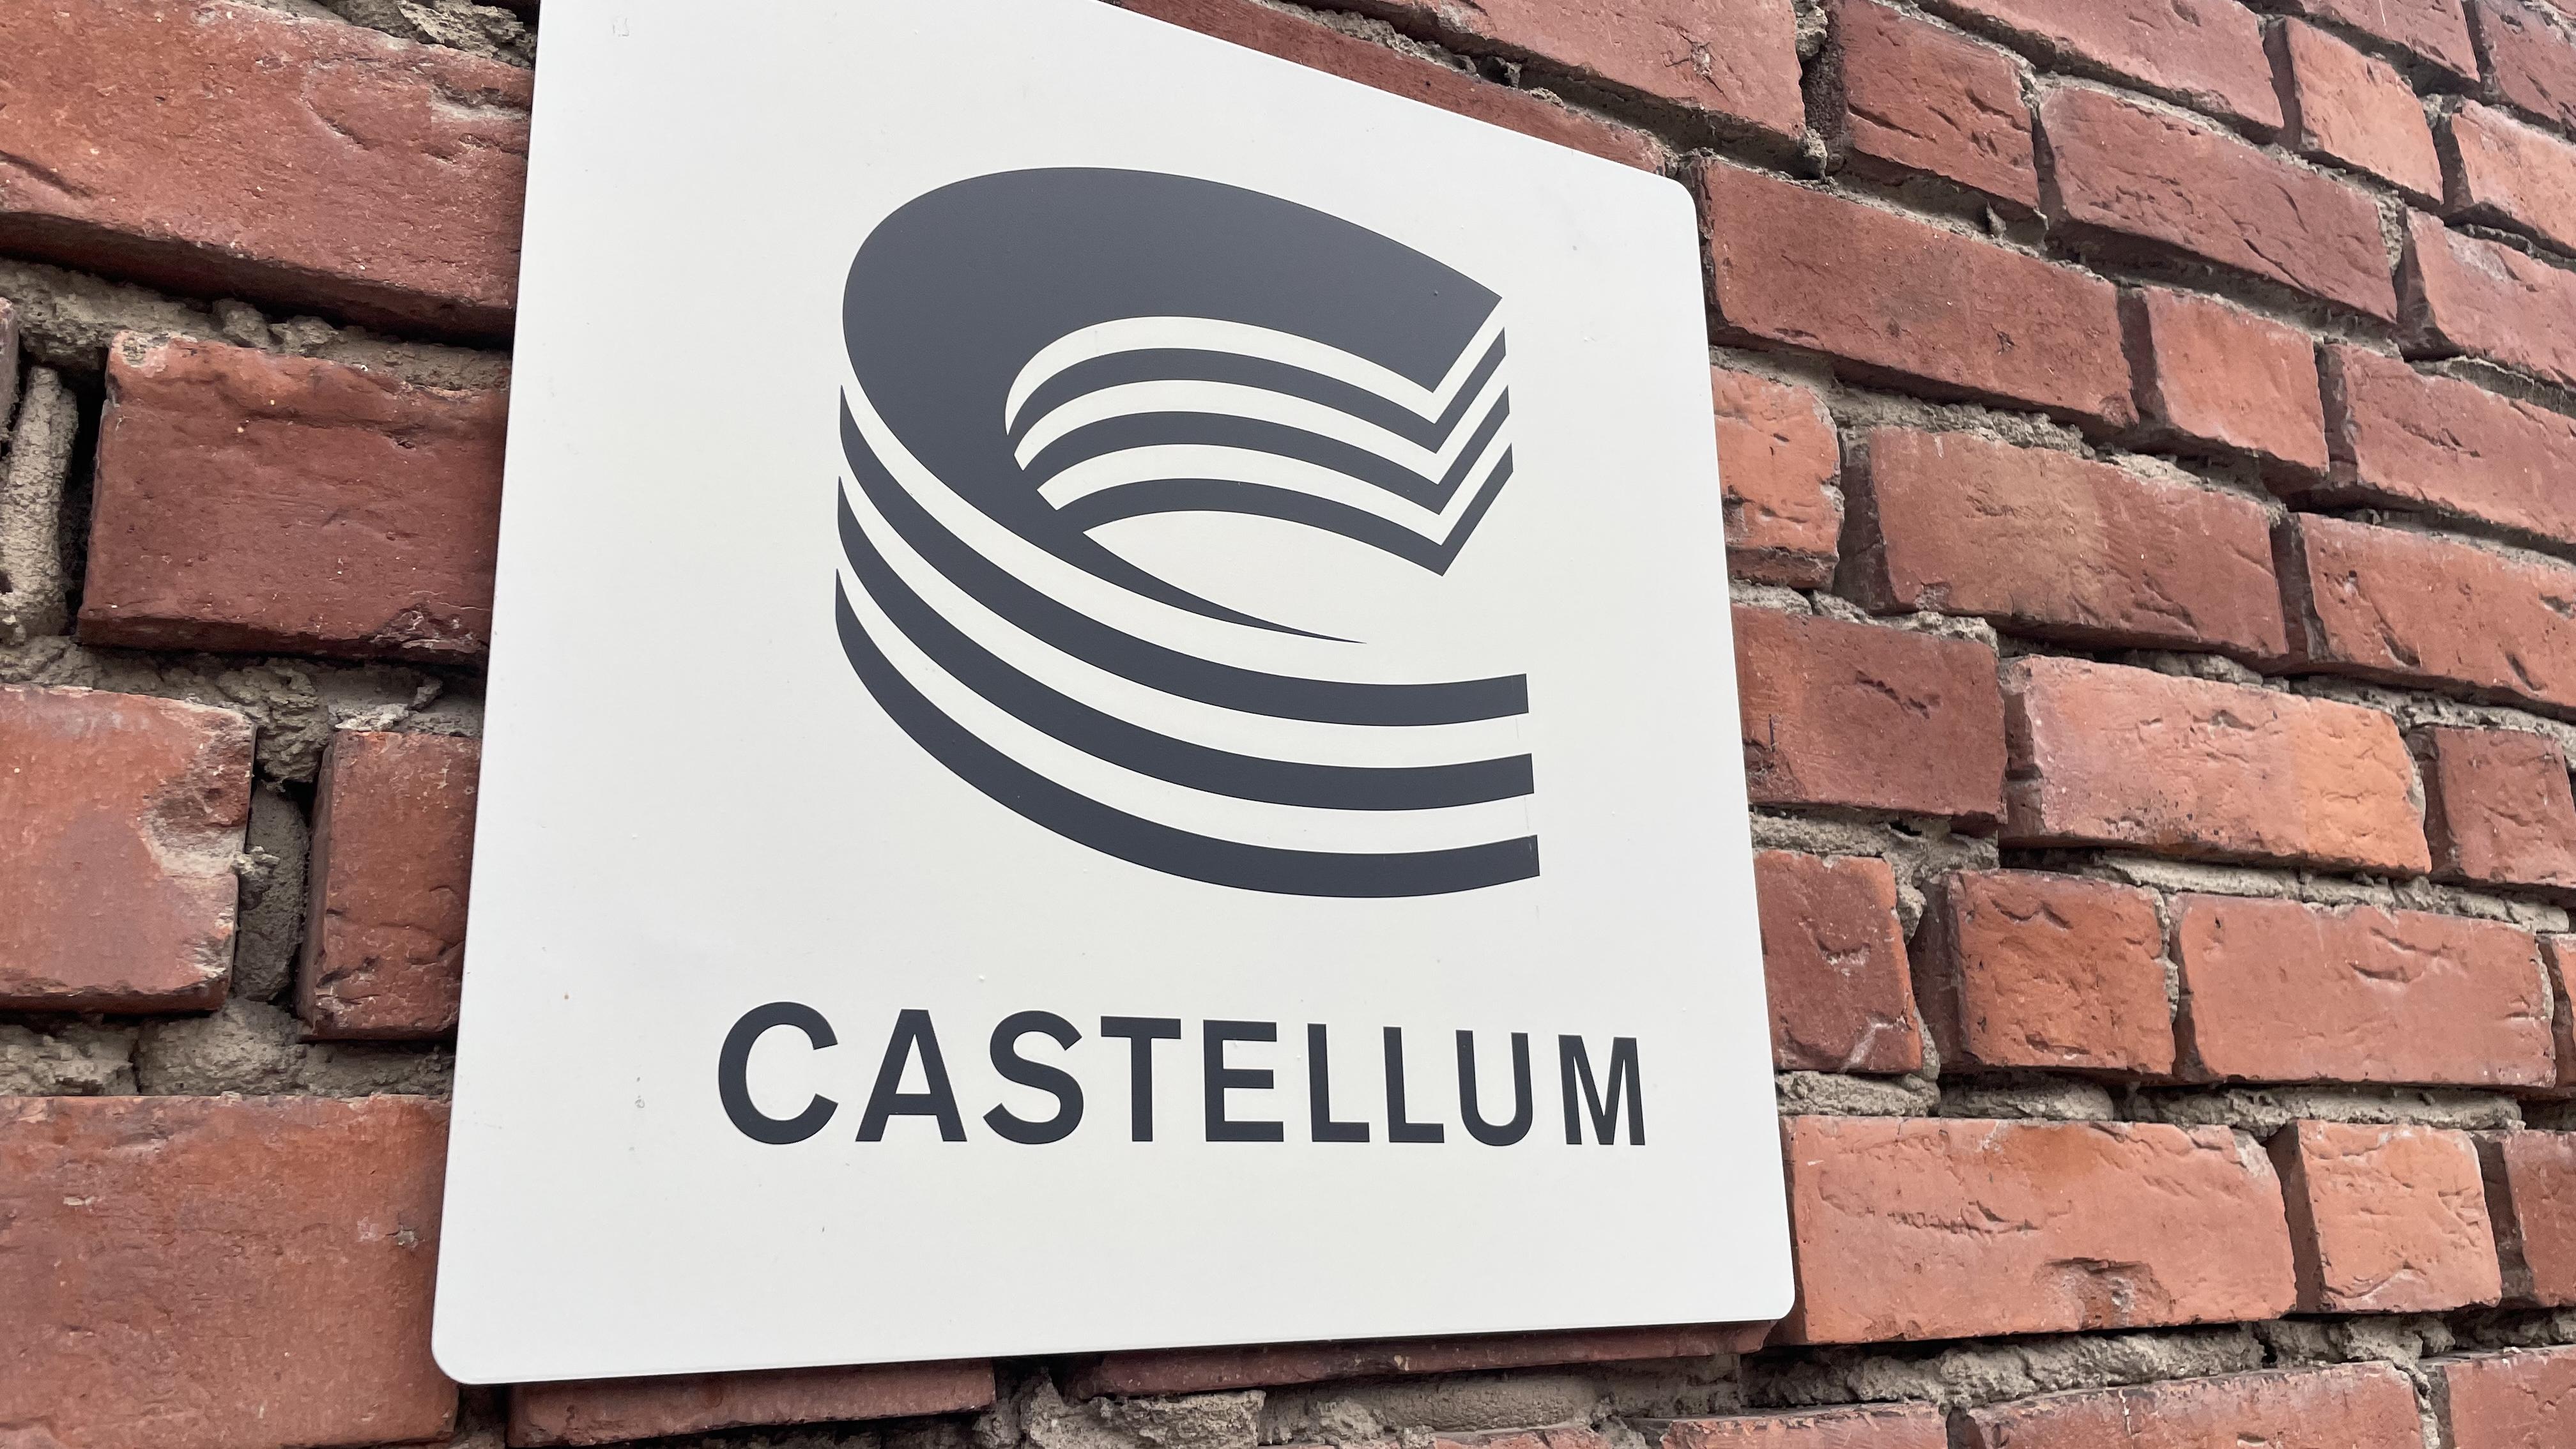 Castellum ökar förvaltningsresultatet